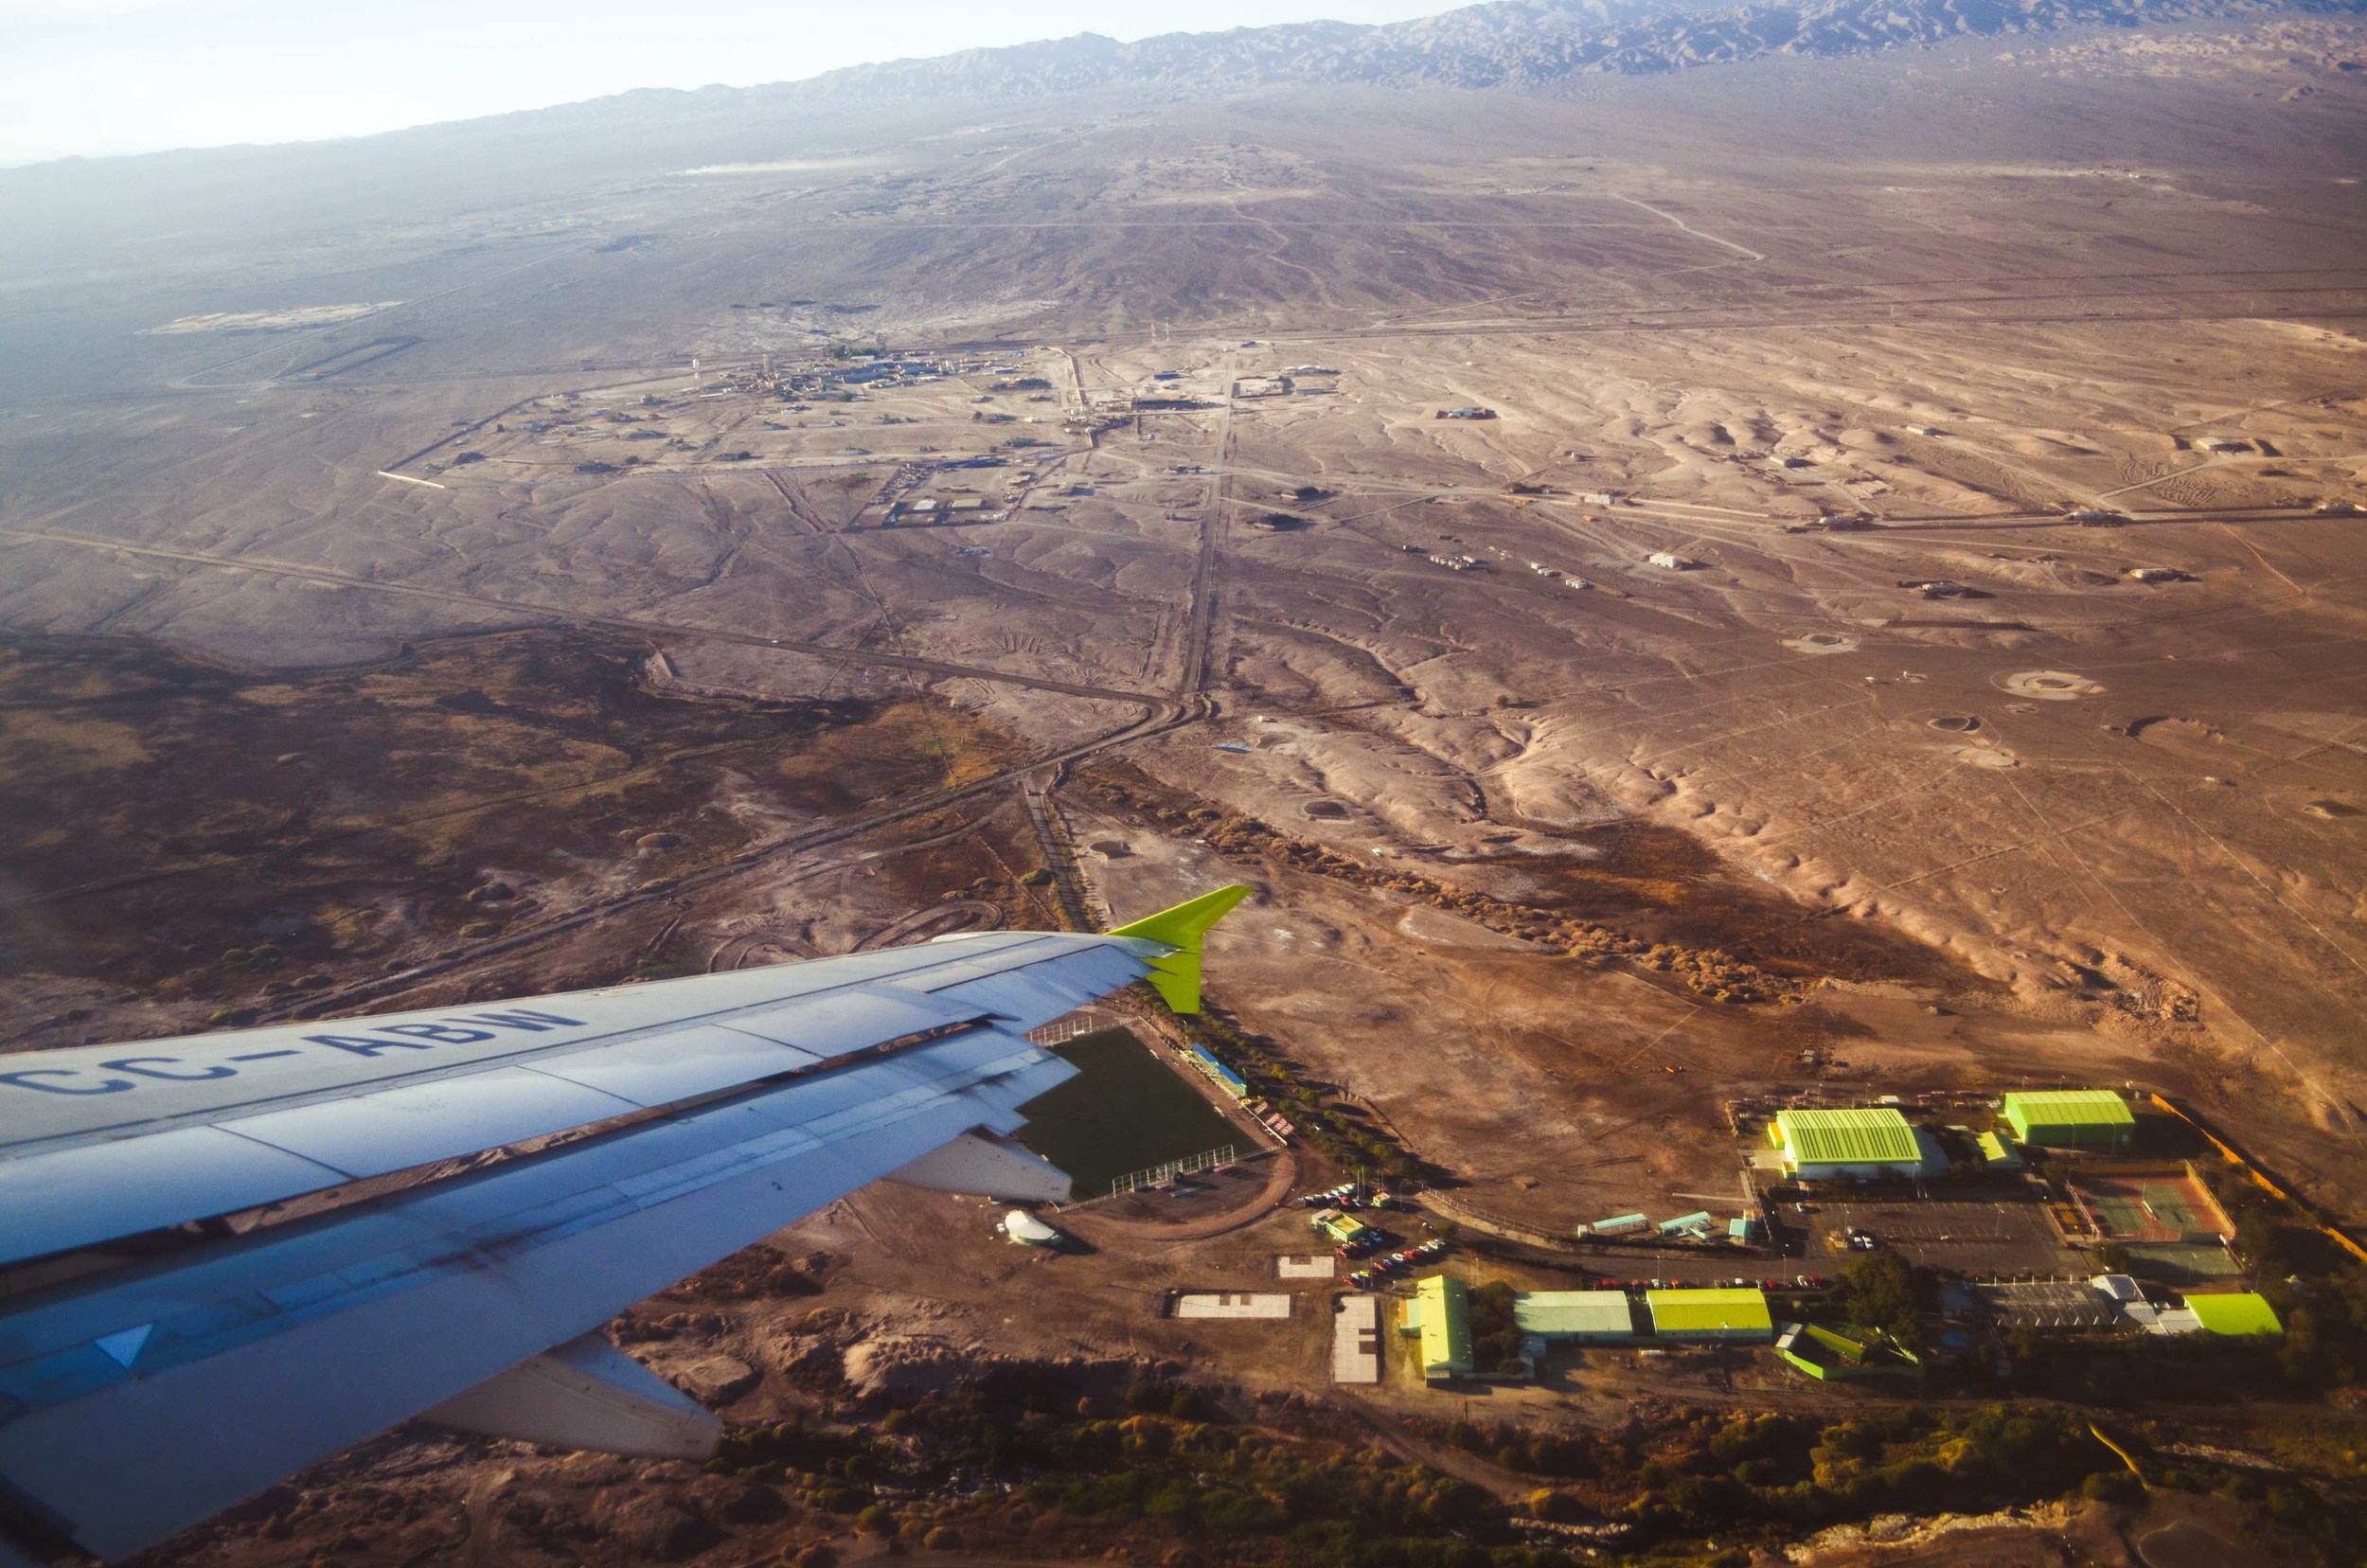  Landing in Calama, Atacama Desert 